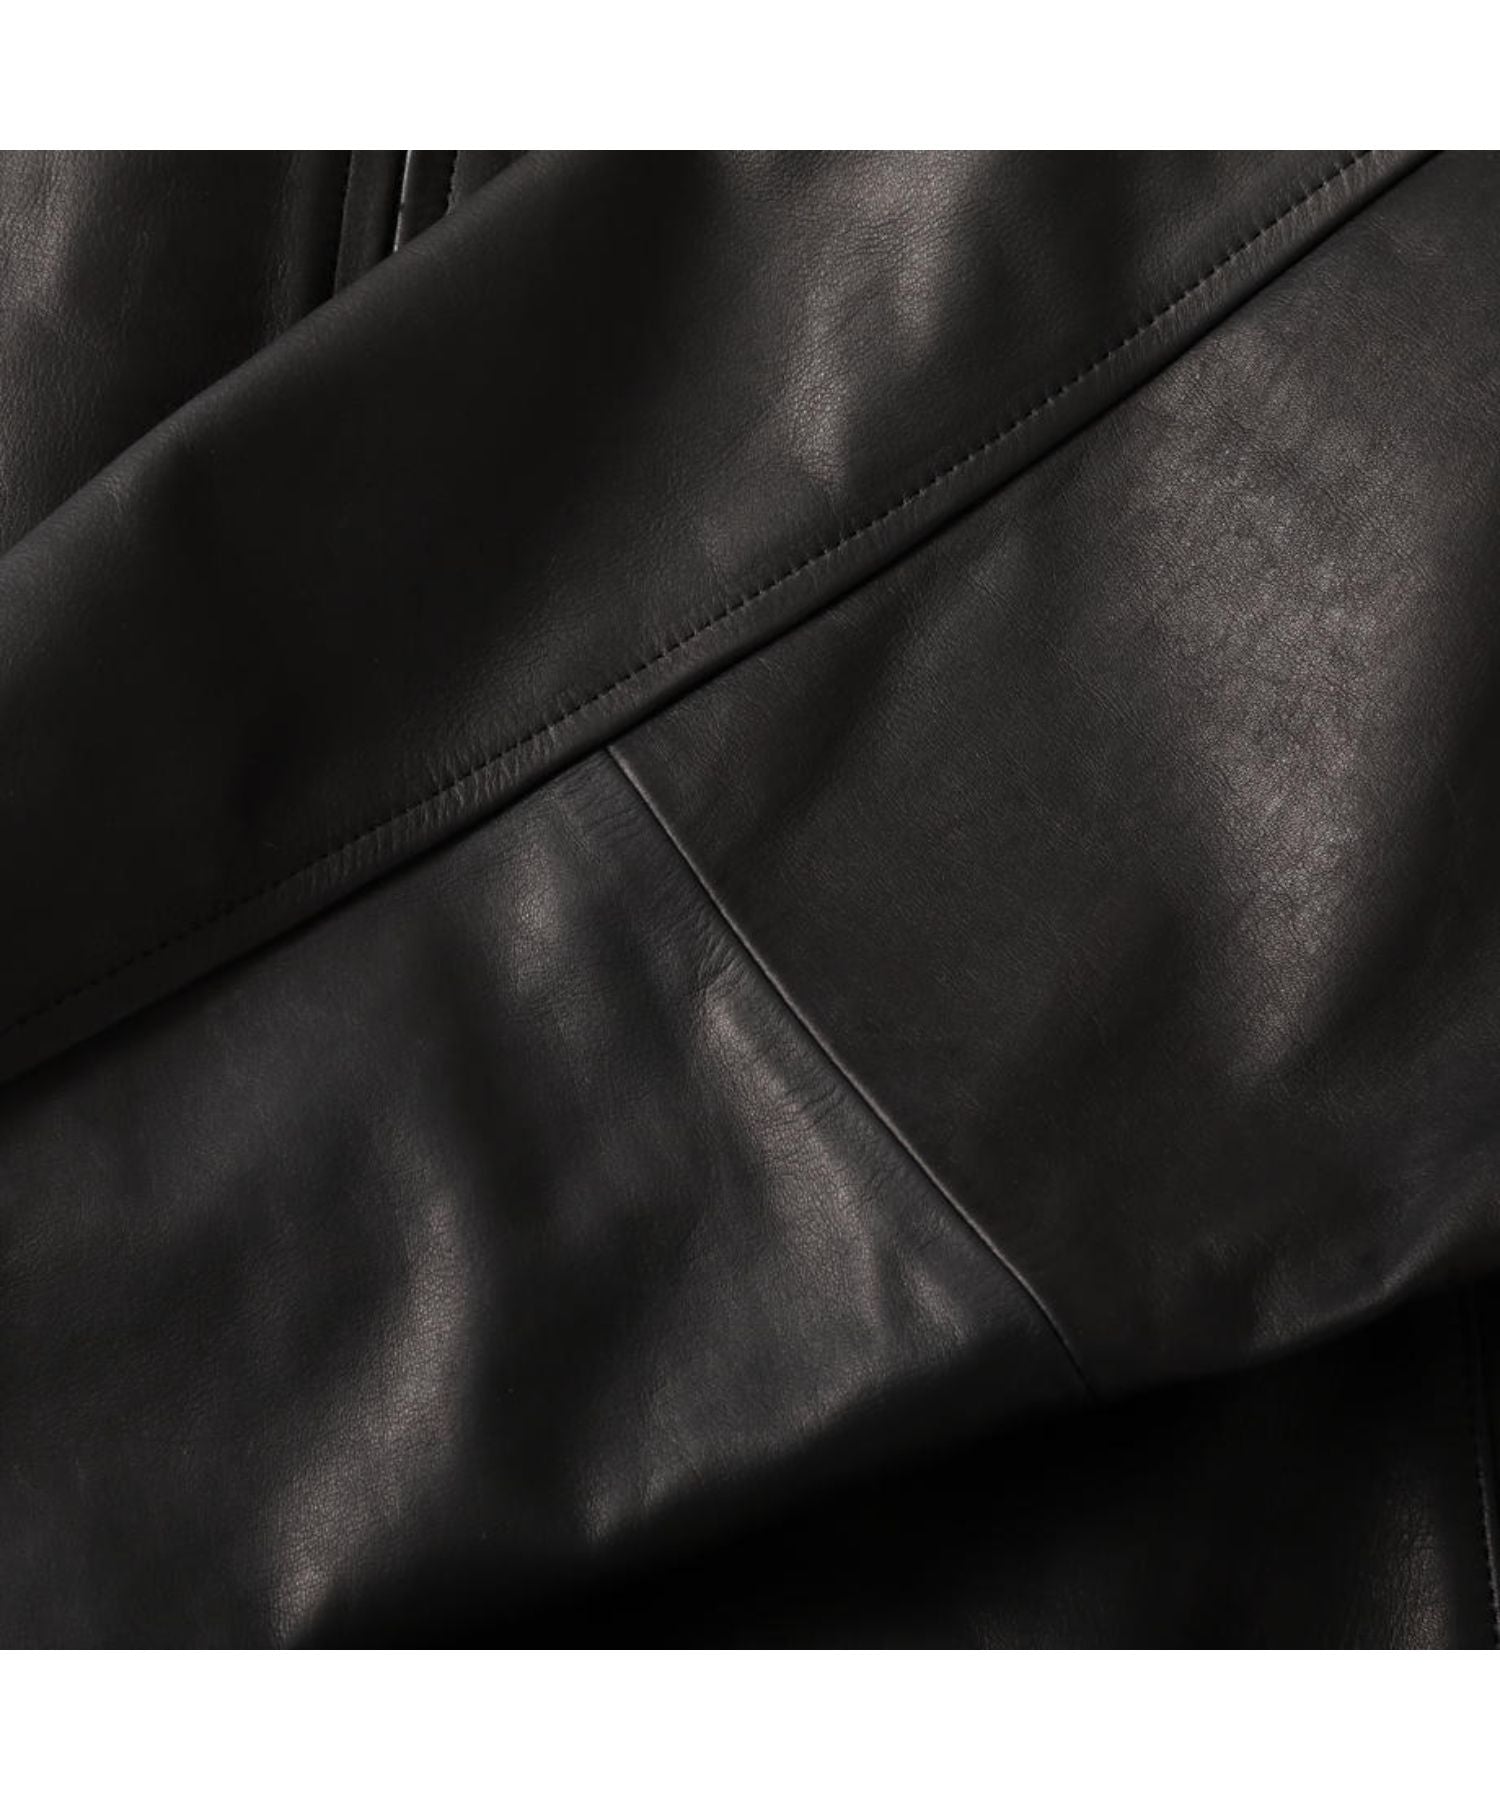 Leather Big Jacket